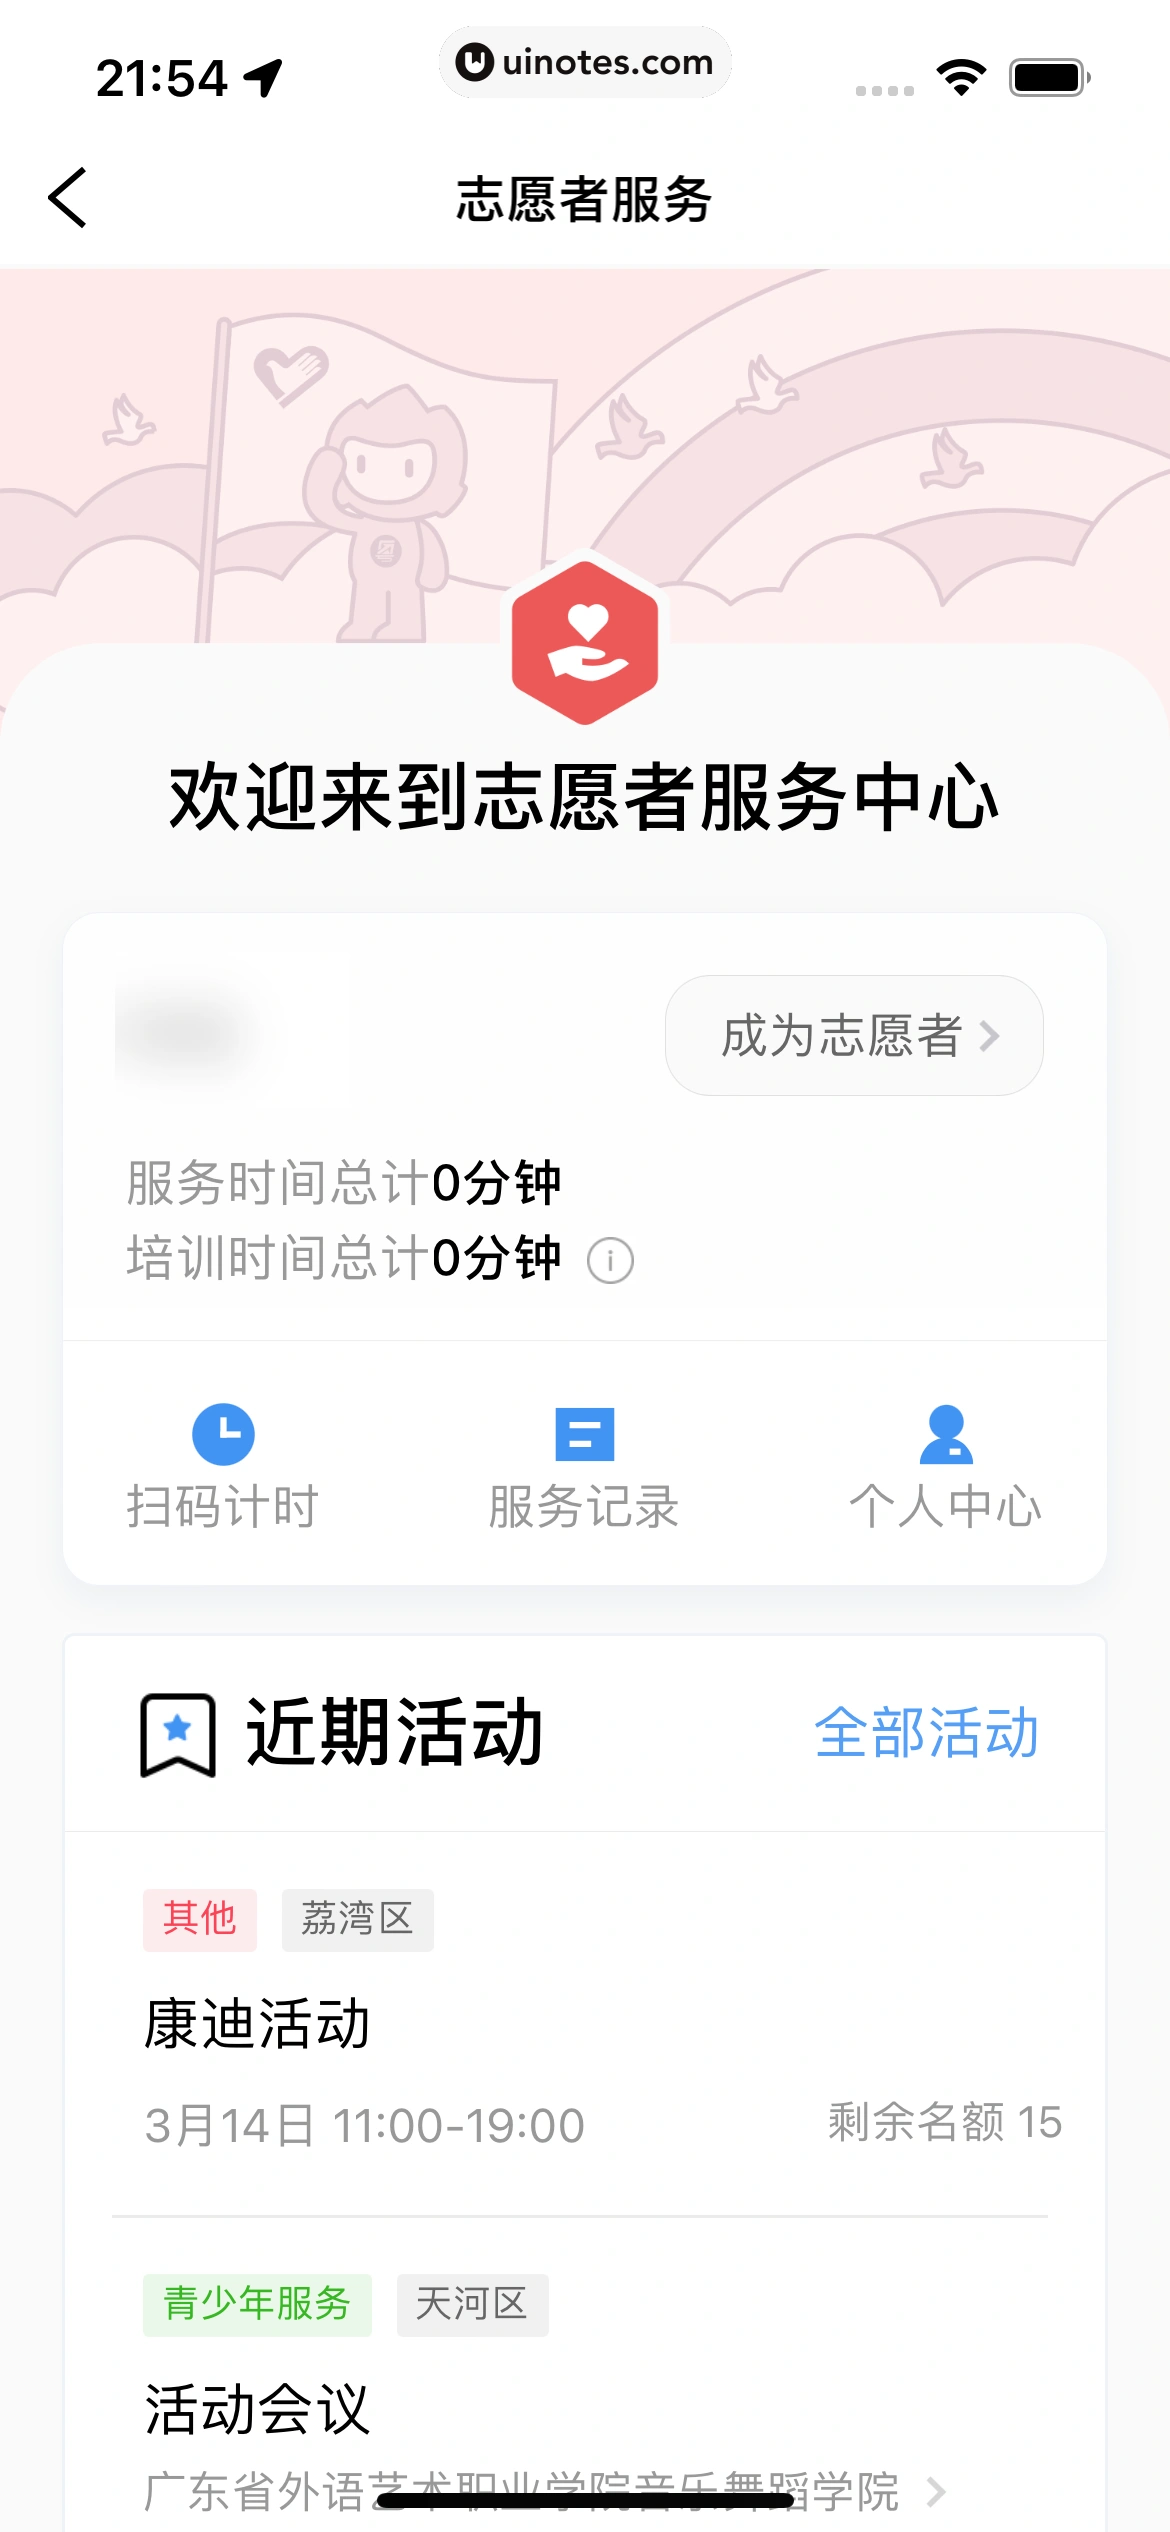 粤省事 App 截图 092 - UI Notes